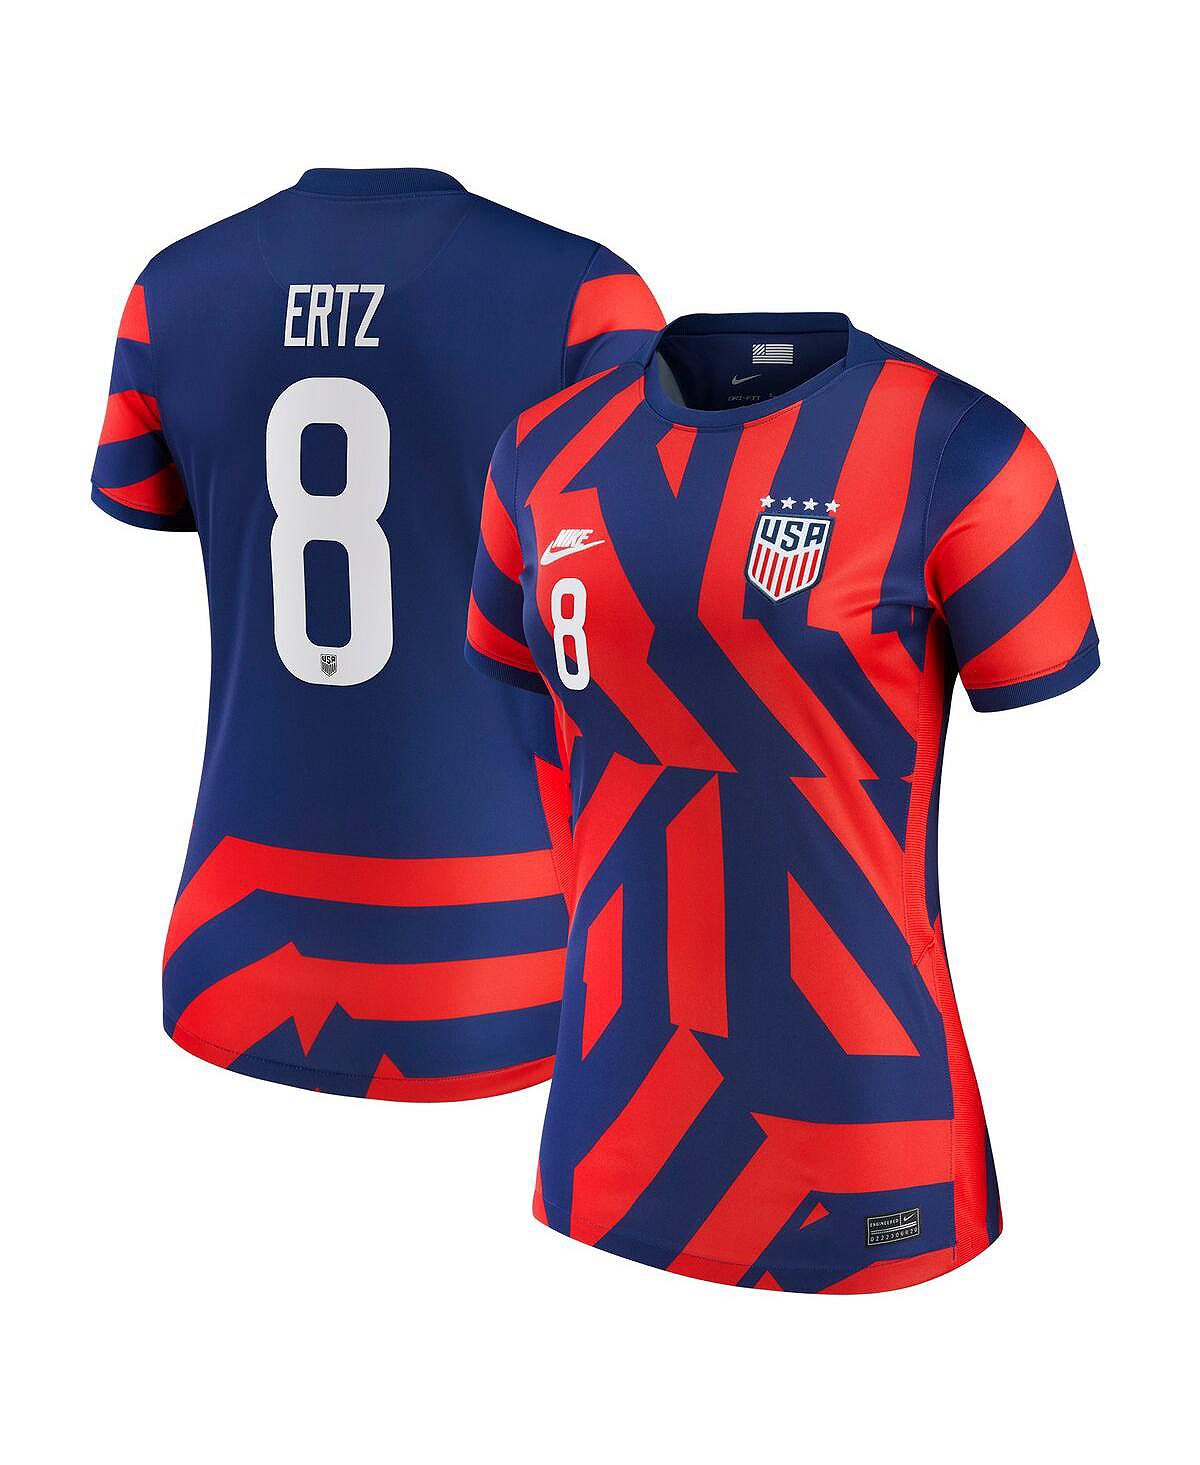 Женская синяя футболка julie ertz uswnt 2021/22 away vapor match authentic player jersey Nike, синий 2021 22 cork gaa 2 stripe home goalkeeper jersey